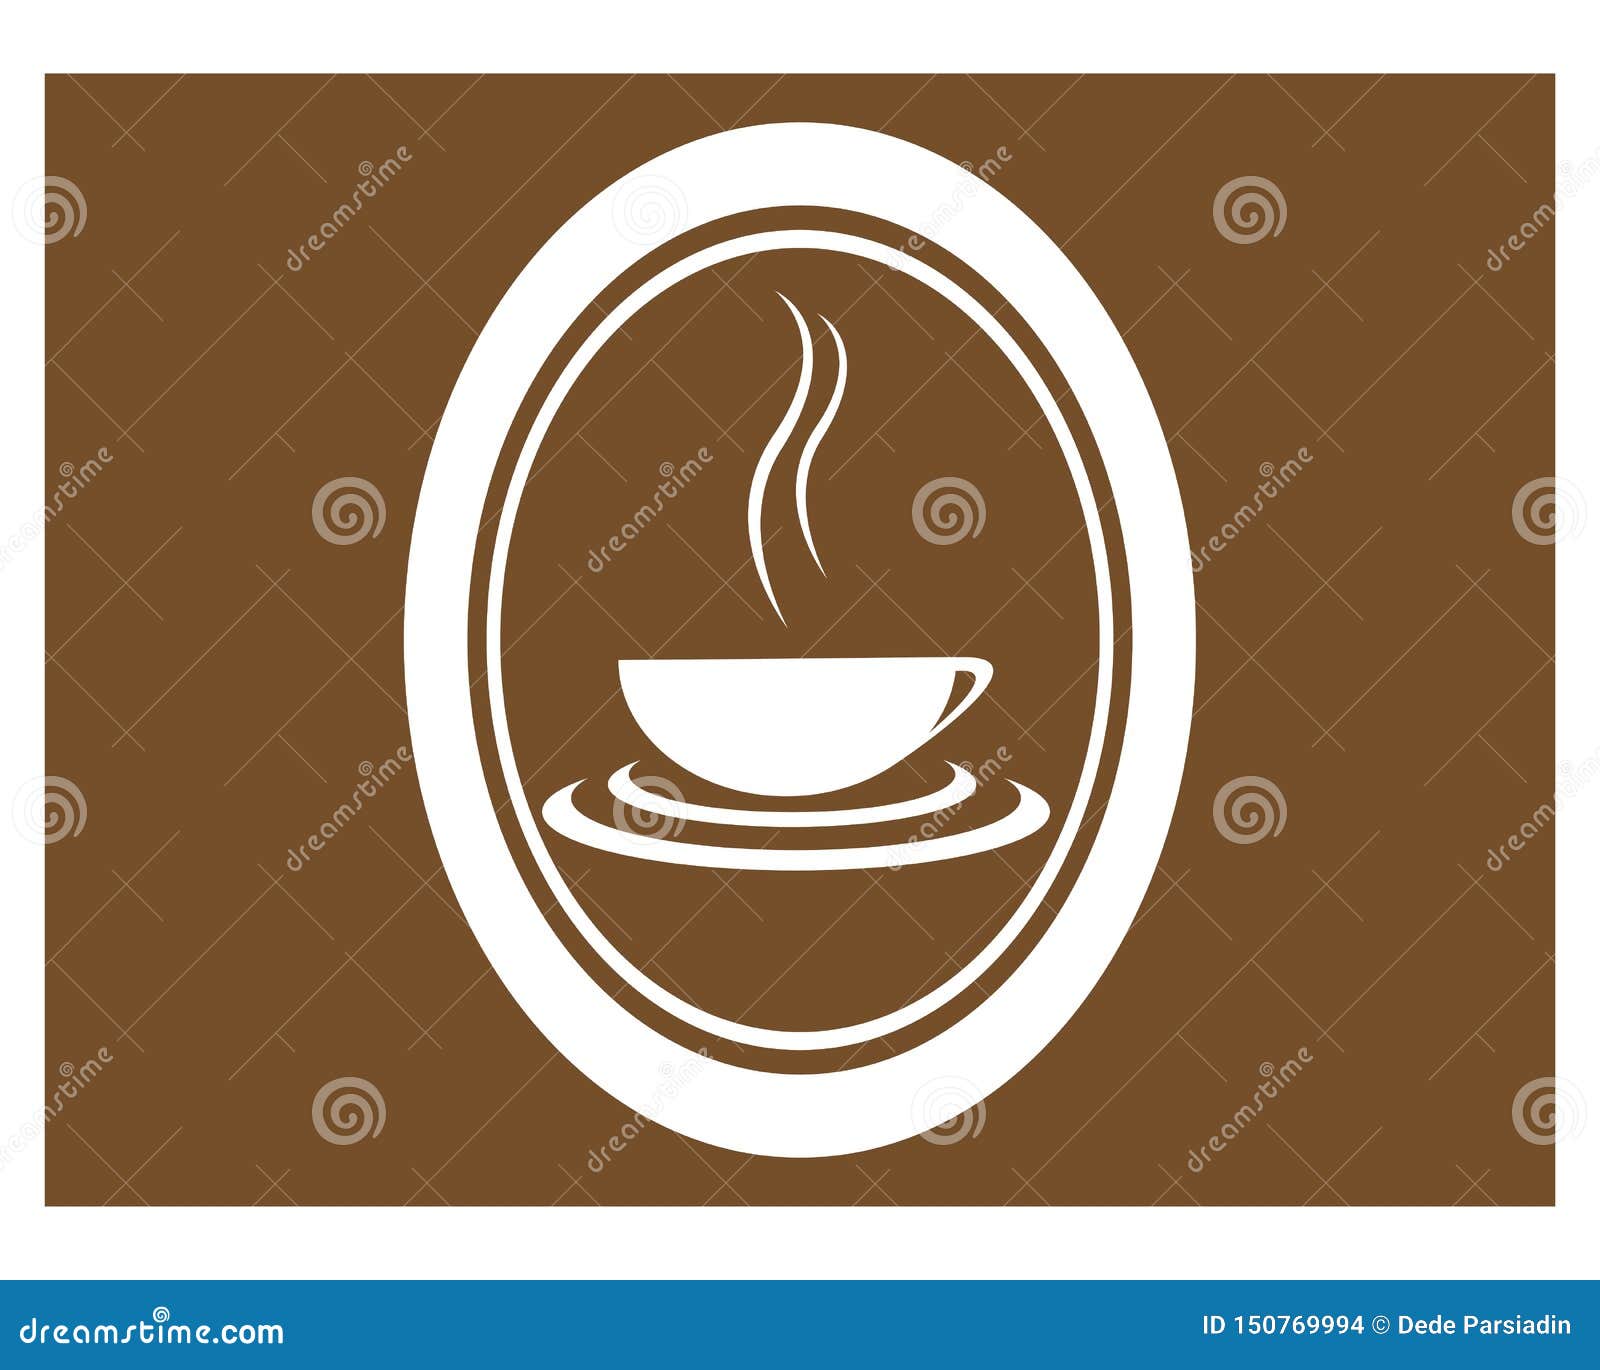 Fili?anka loga szablon. Filiżanka logo szablonu ikony wektorowy projekt, abstrakt, aromat, piec, piekarnia, napój, śniadanie, brąz, kawiarnia, kofeina, cappuccino, kucharz, kucharstwo obiadowy, wyśmienicie, doodle, pije, knajpa, element, emblemat, energiczny, kawa espresso, jedzenie, towary, grafika, upał kuchenny, gorący, ilustracyjny, latte, kubek, żywienie, przygotowywa, produkt, restauracja, retro, sylwetka, cukierki, smak, rocznik